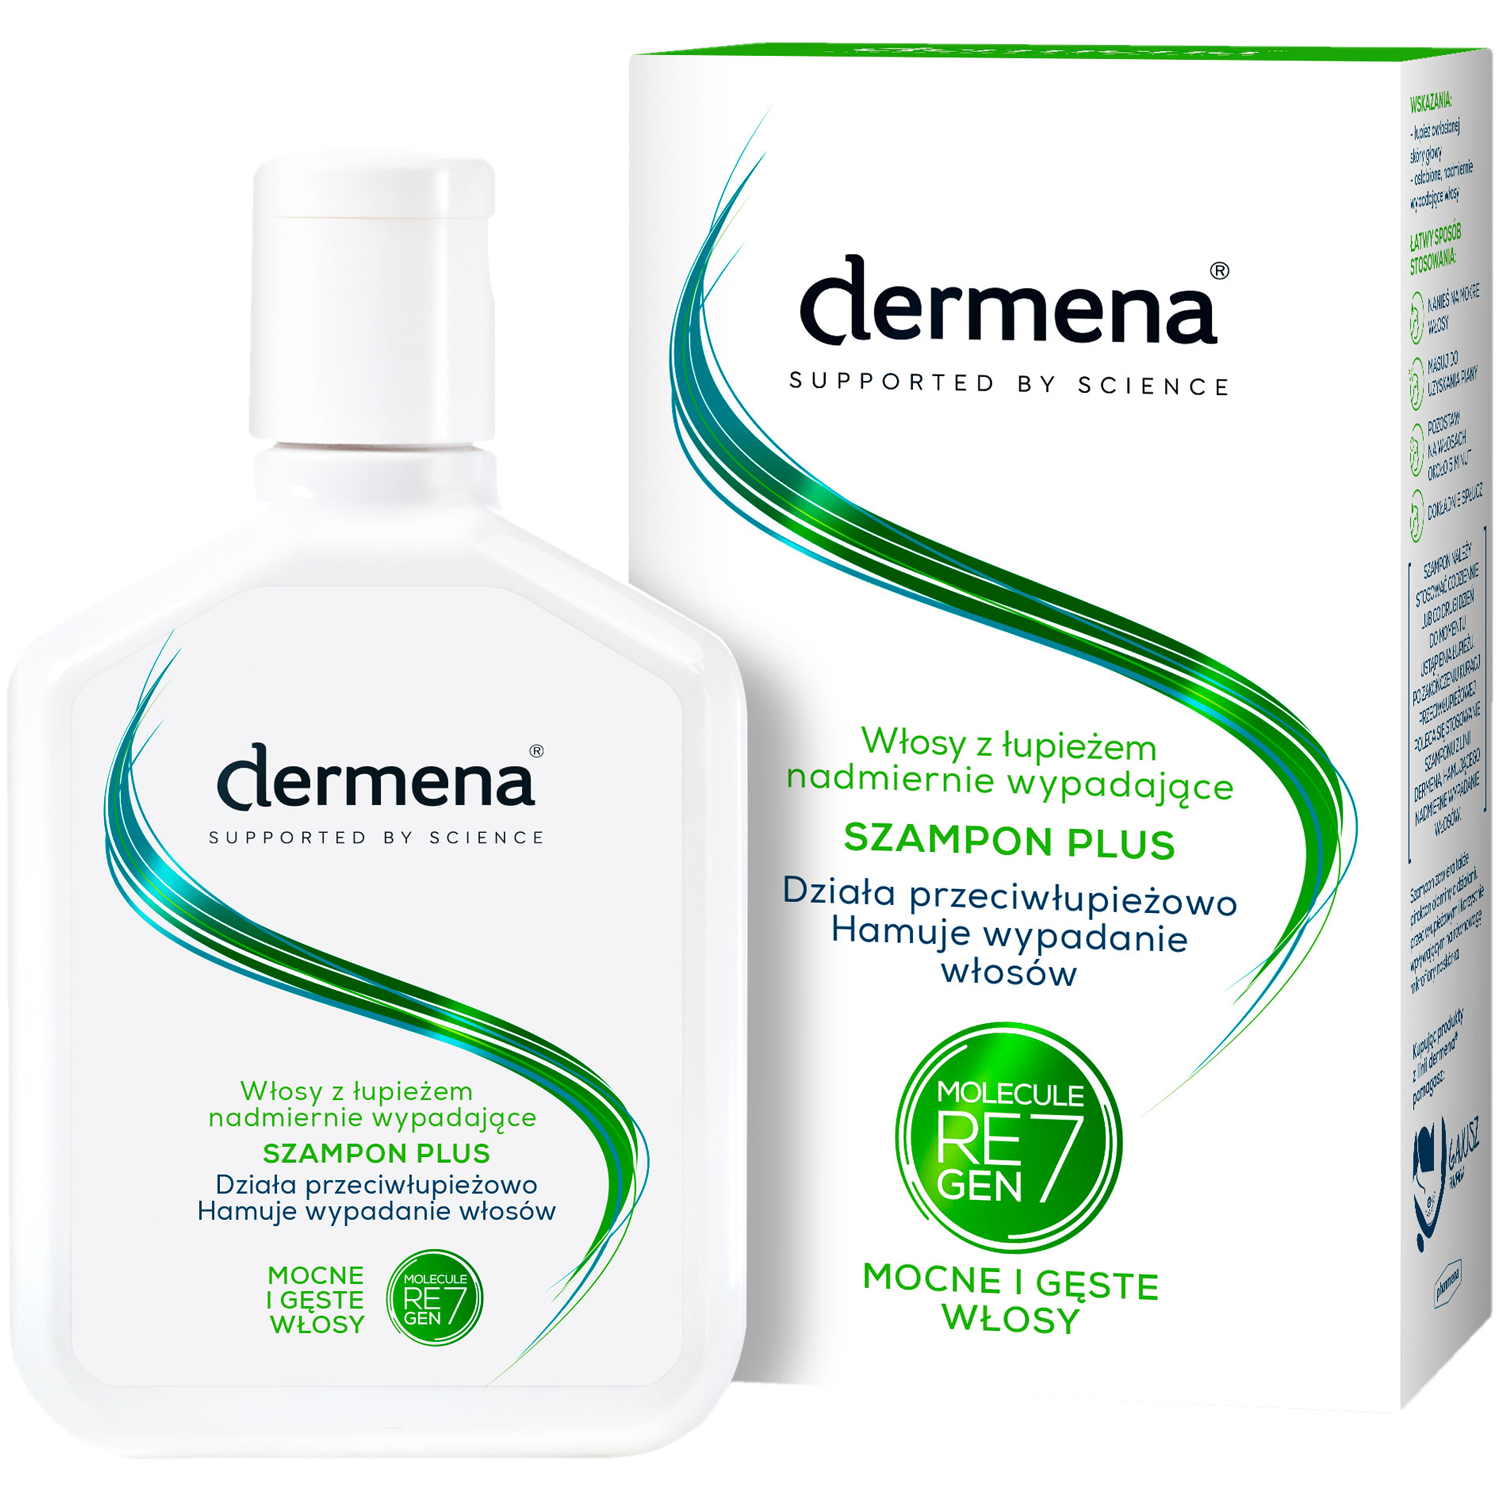 Dermena Plus шампунь против перхоти, препятствующий выпадению волос 200 мл